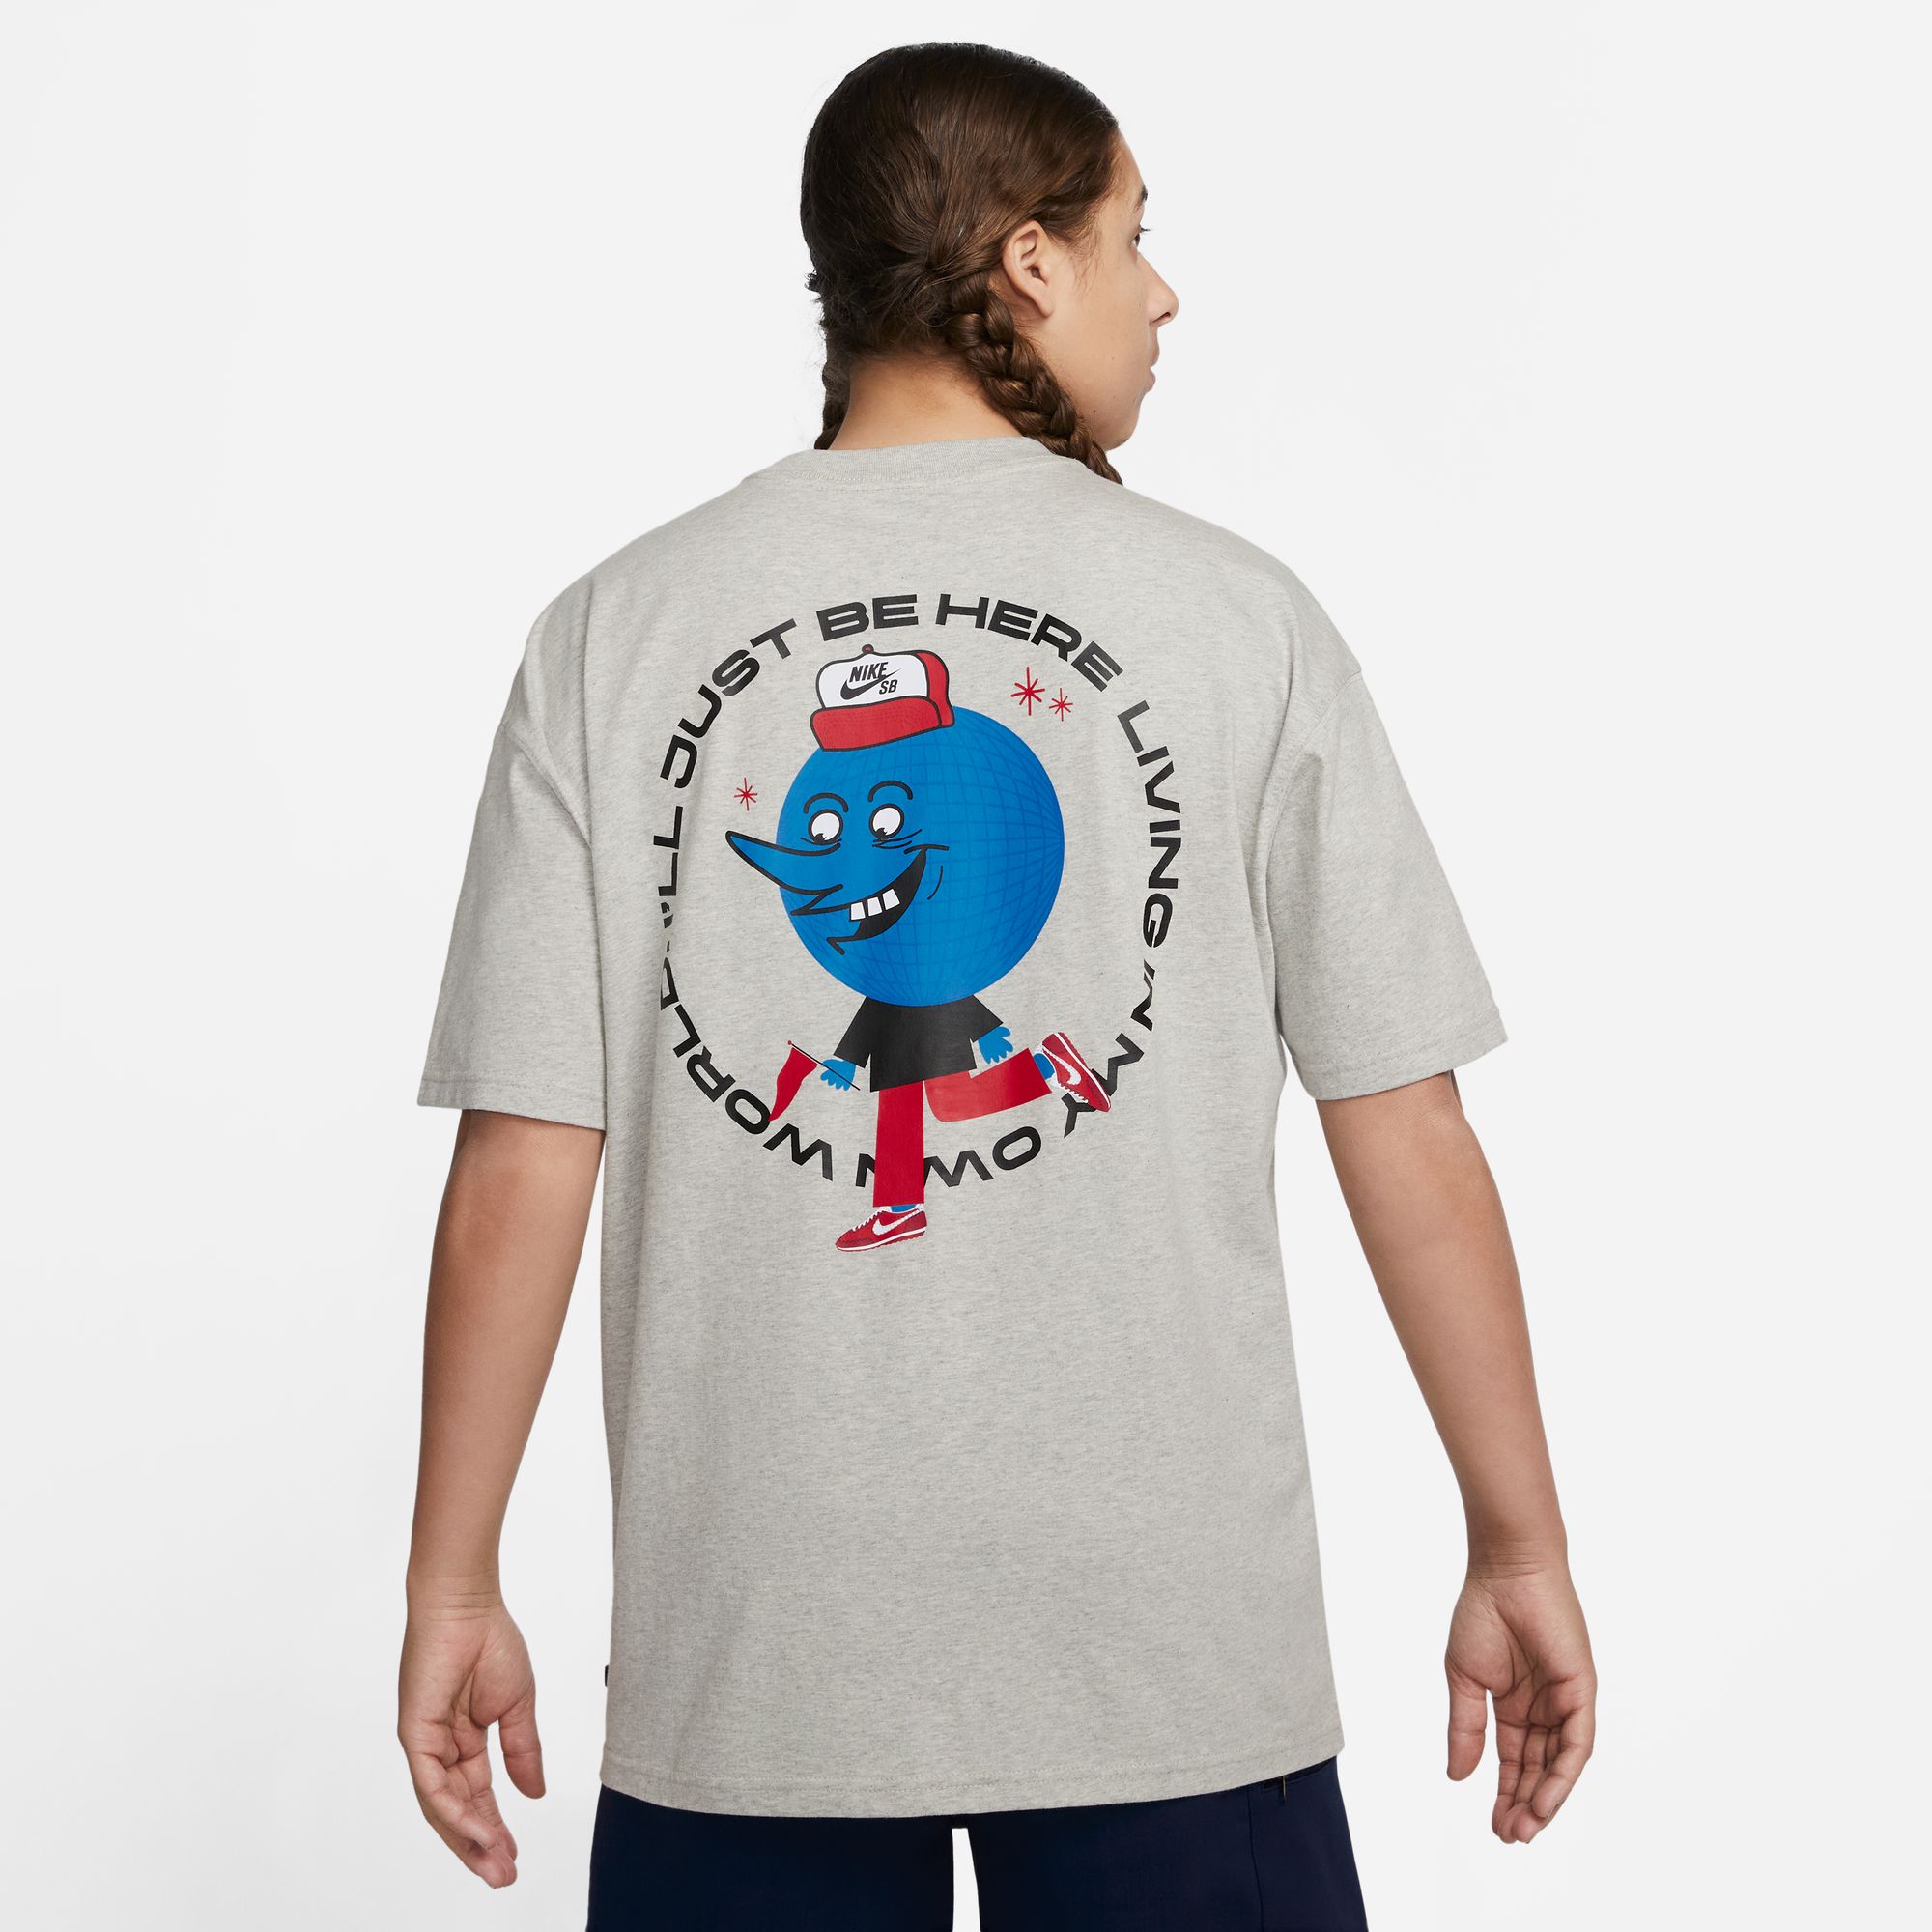 Nike SB Men's Skate T-Shirt Just Be Here Grey 02